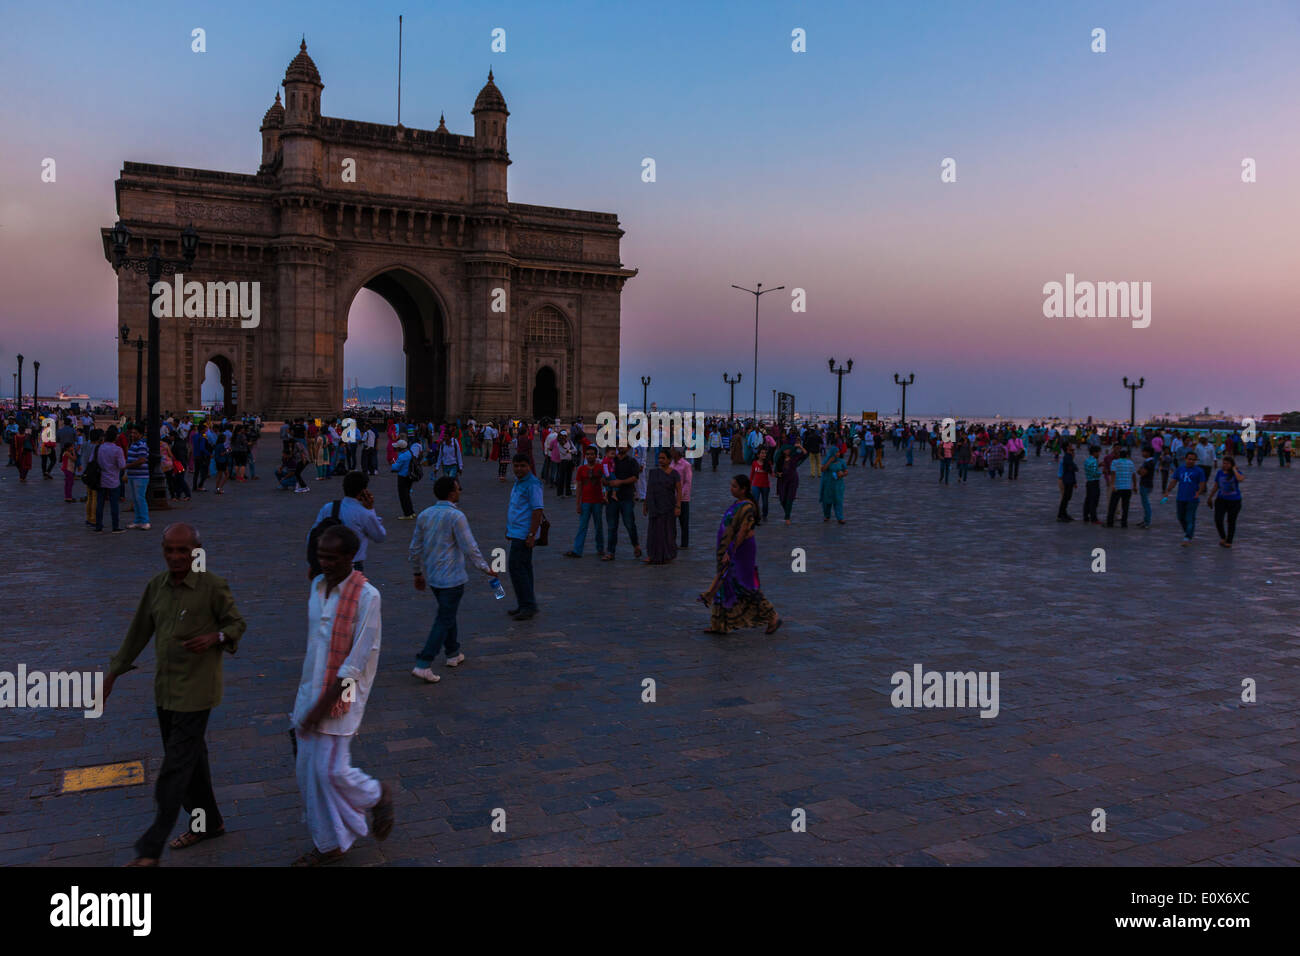 Gates of India in der Abenddämmerung mit Besuchern, Mumbai Indien beschäftigt. Stockfoto